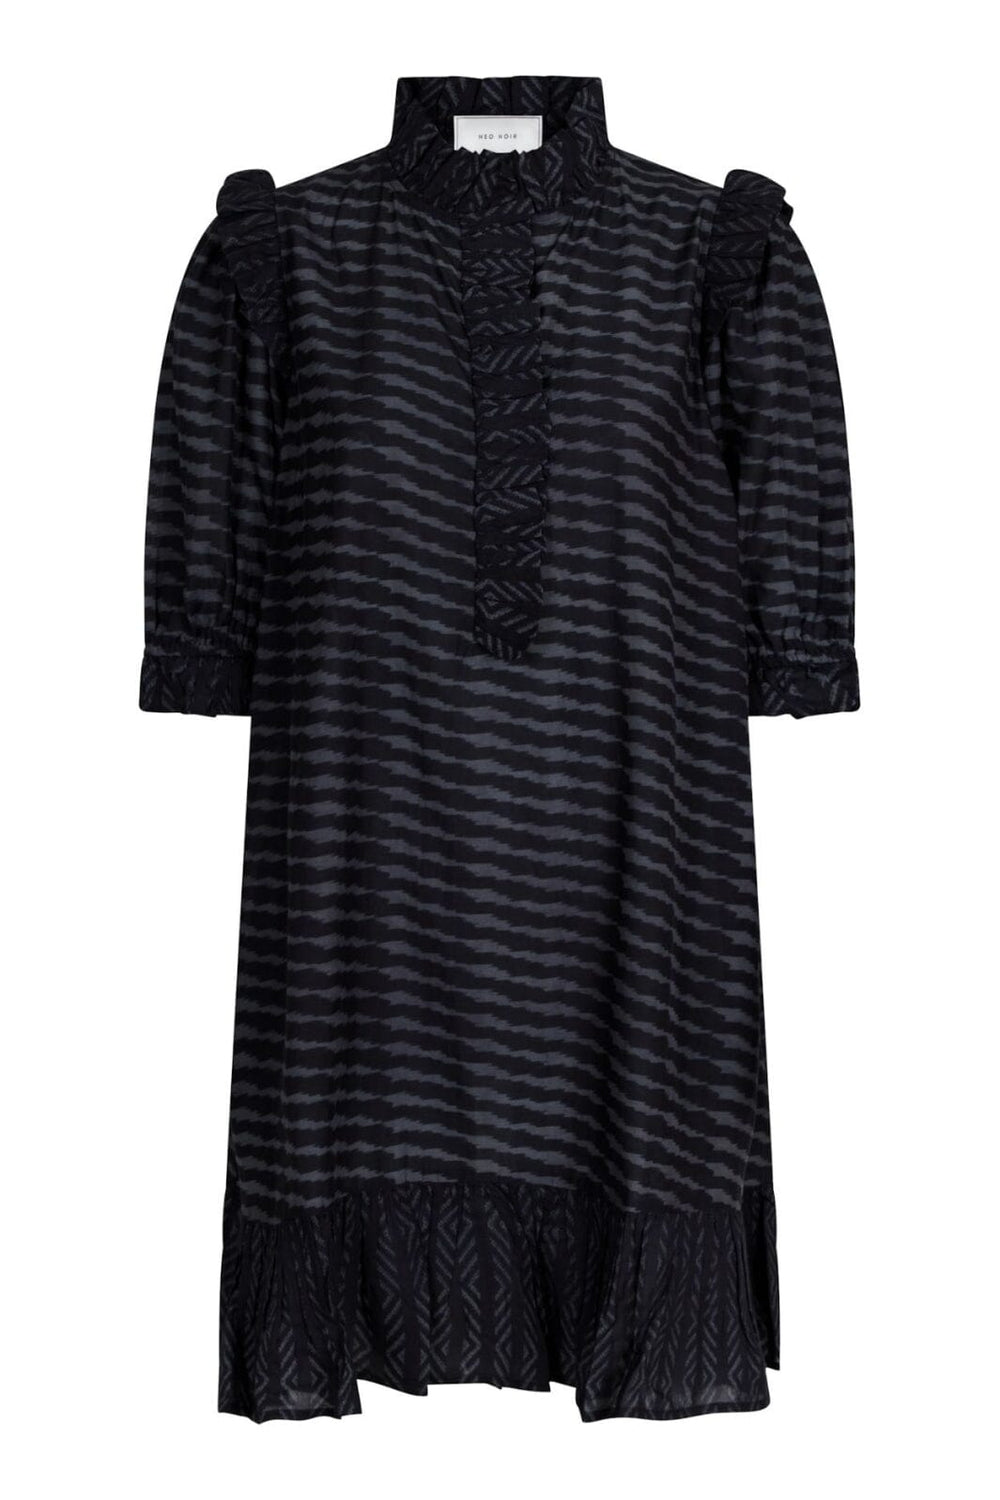 Neo Noir - Hani Graphic Dress - Black Kjoler 